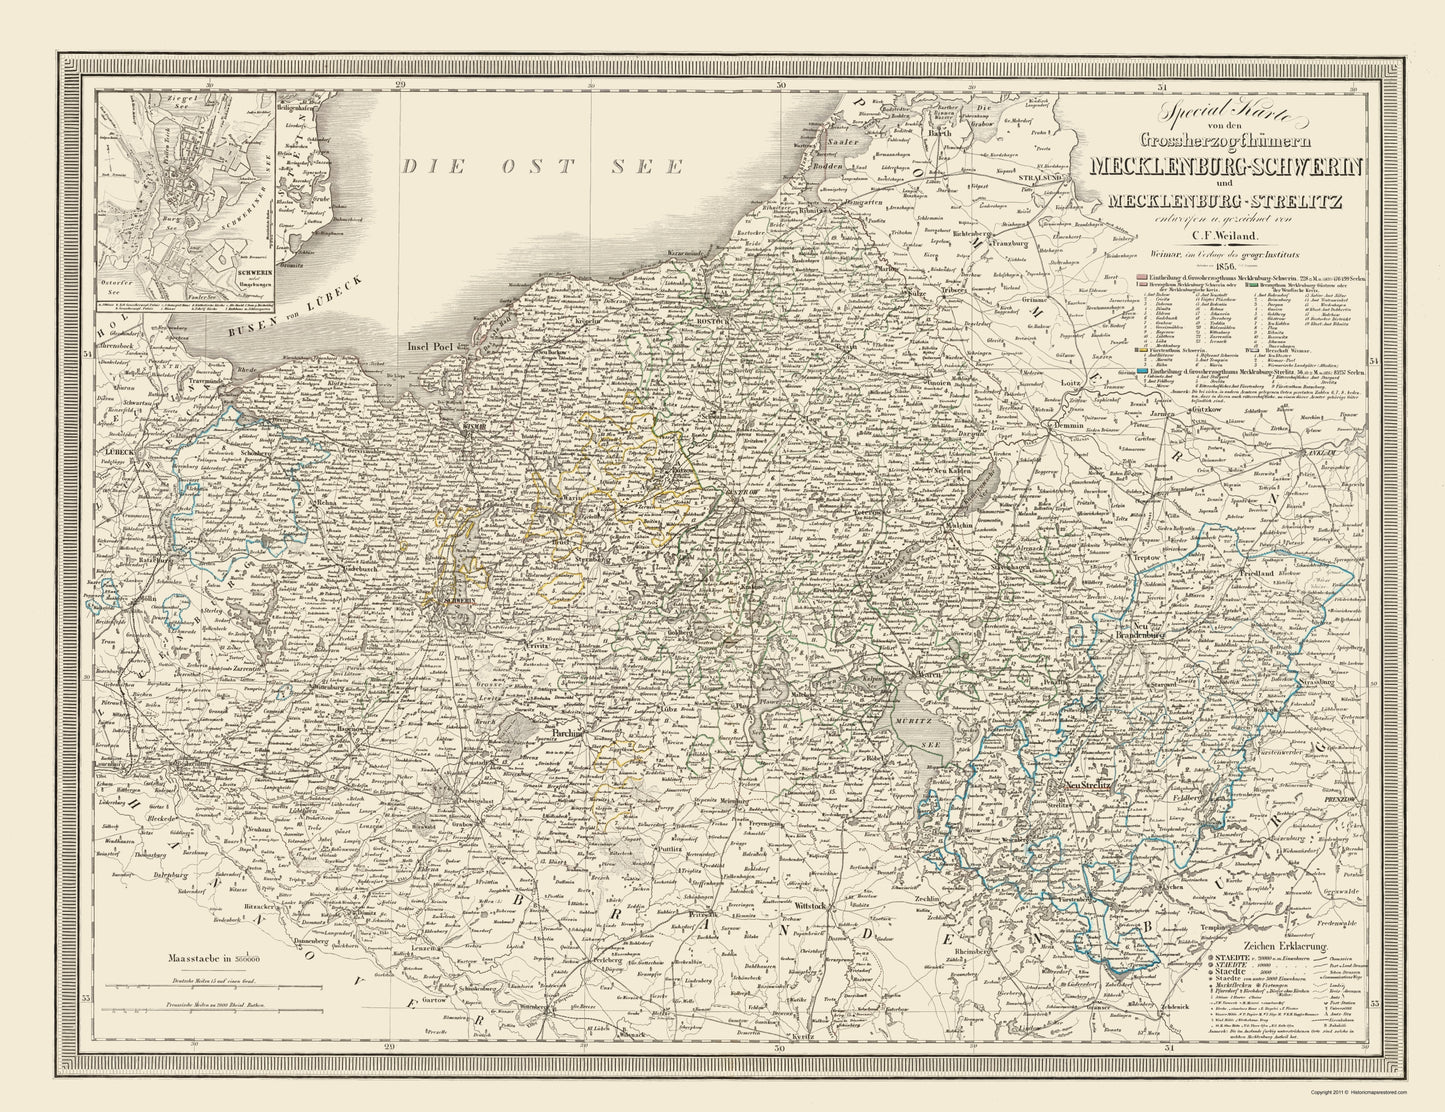 Historic Map - Mecklenburg Schwerin Strelitz Germany - Weiland 1856 - 23 x 29.89 - Vintage Wall Art